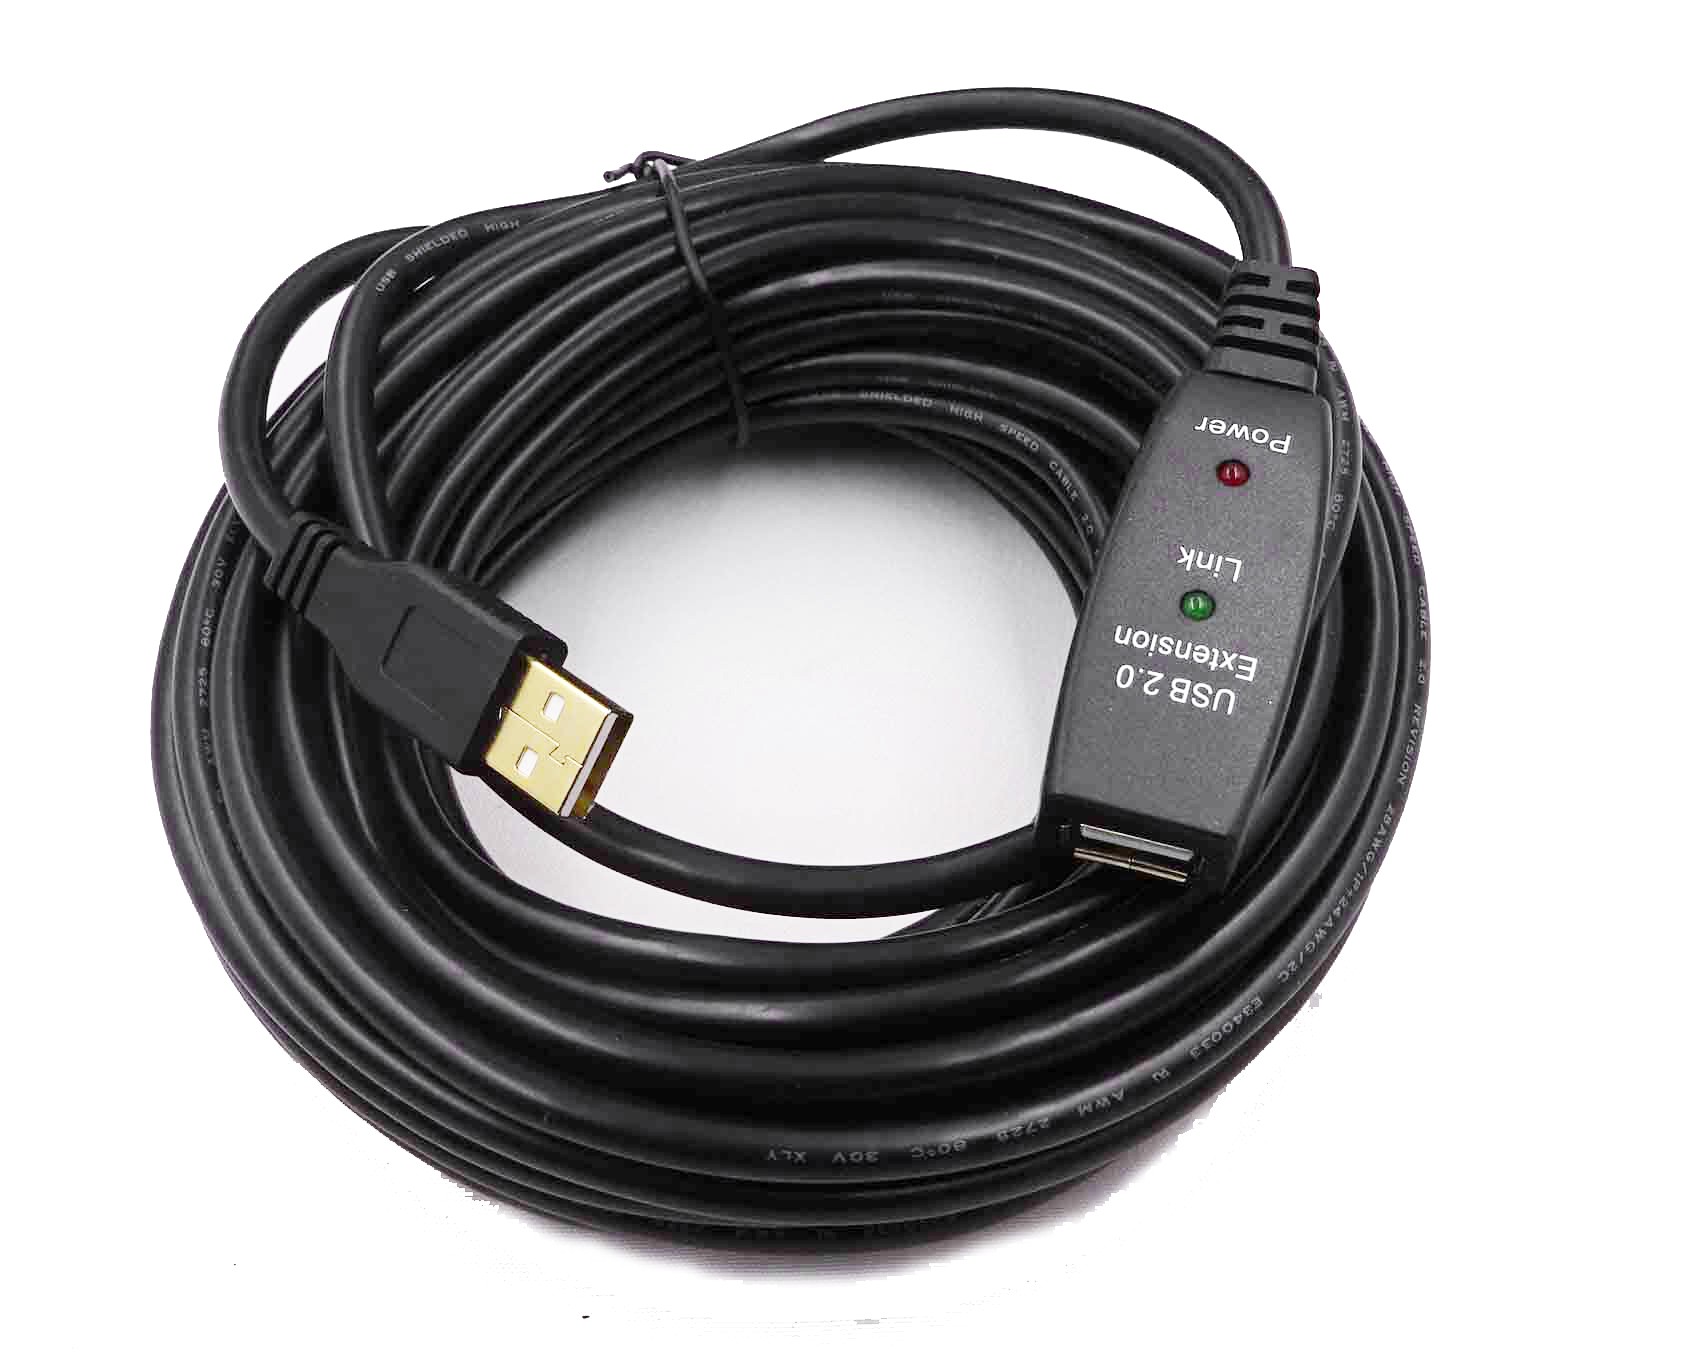 Cuc Cable Usb 2.0 Amplifié 10m Avec Prises A/b